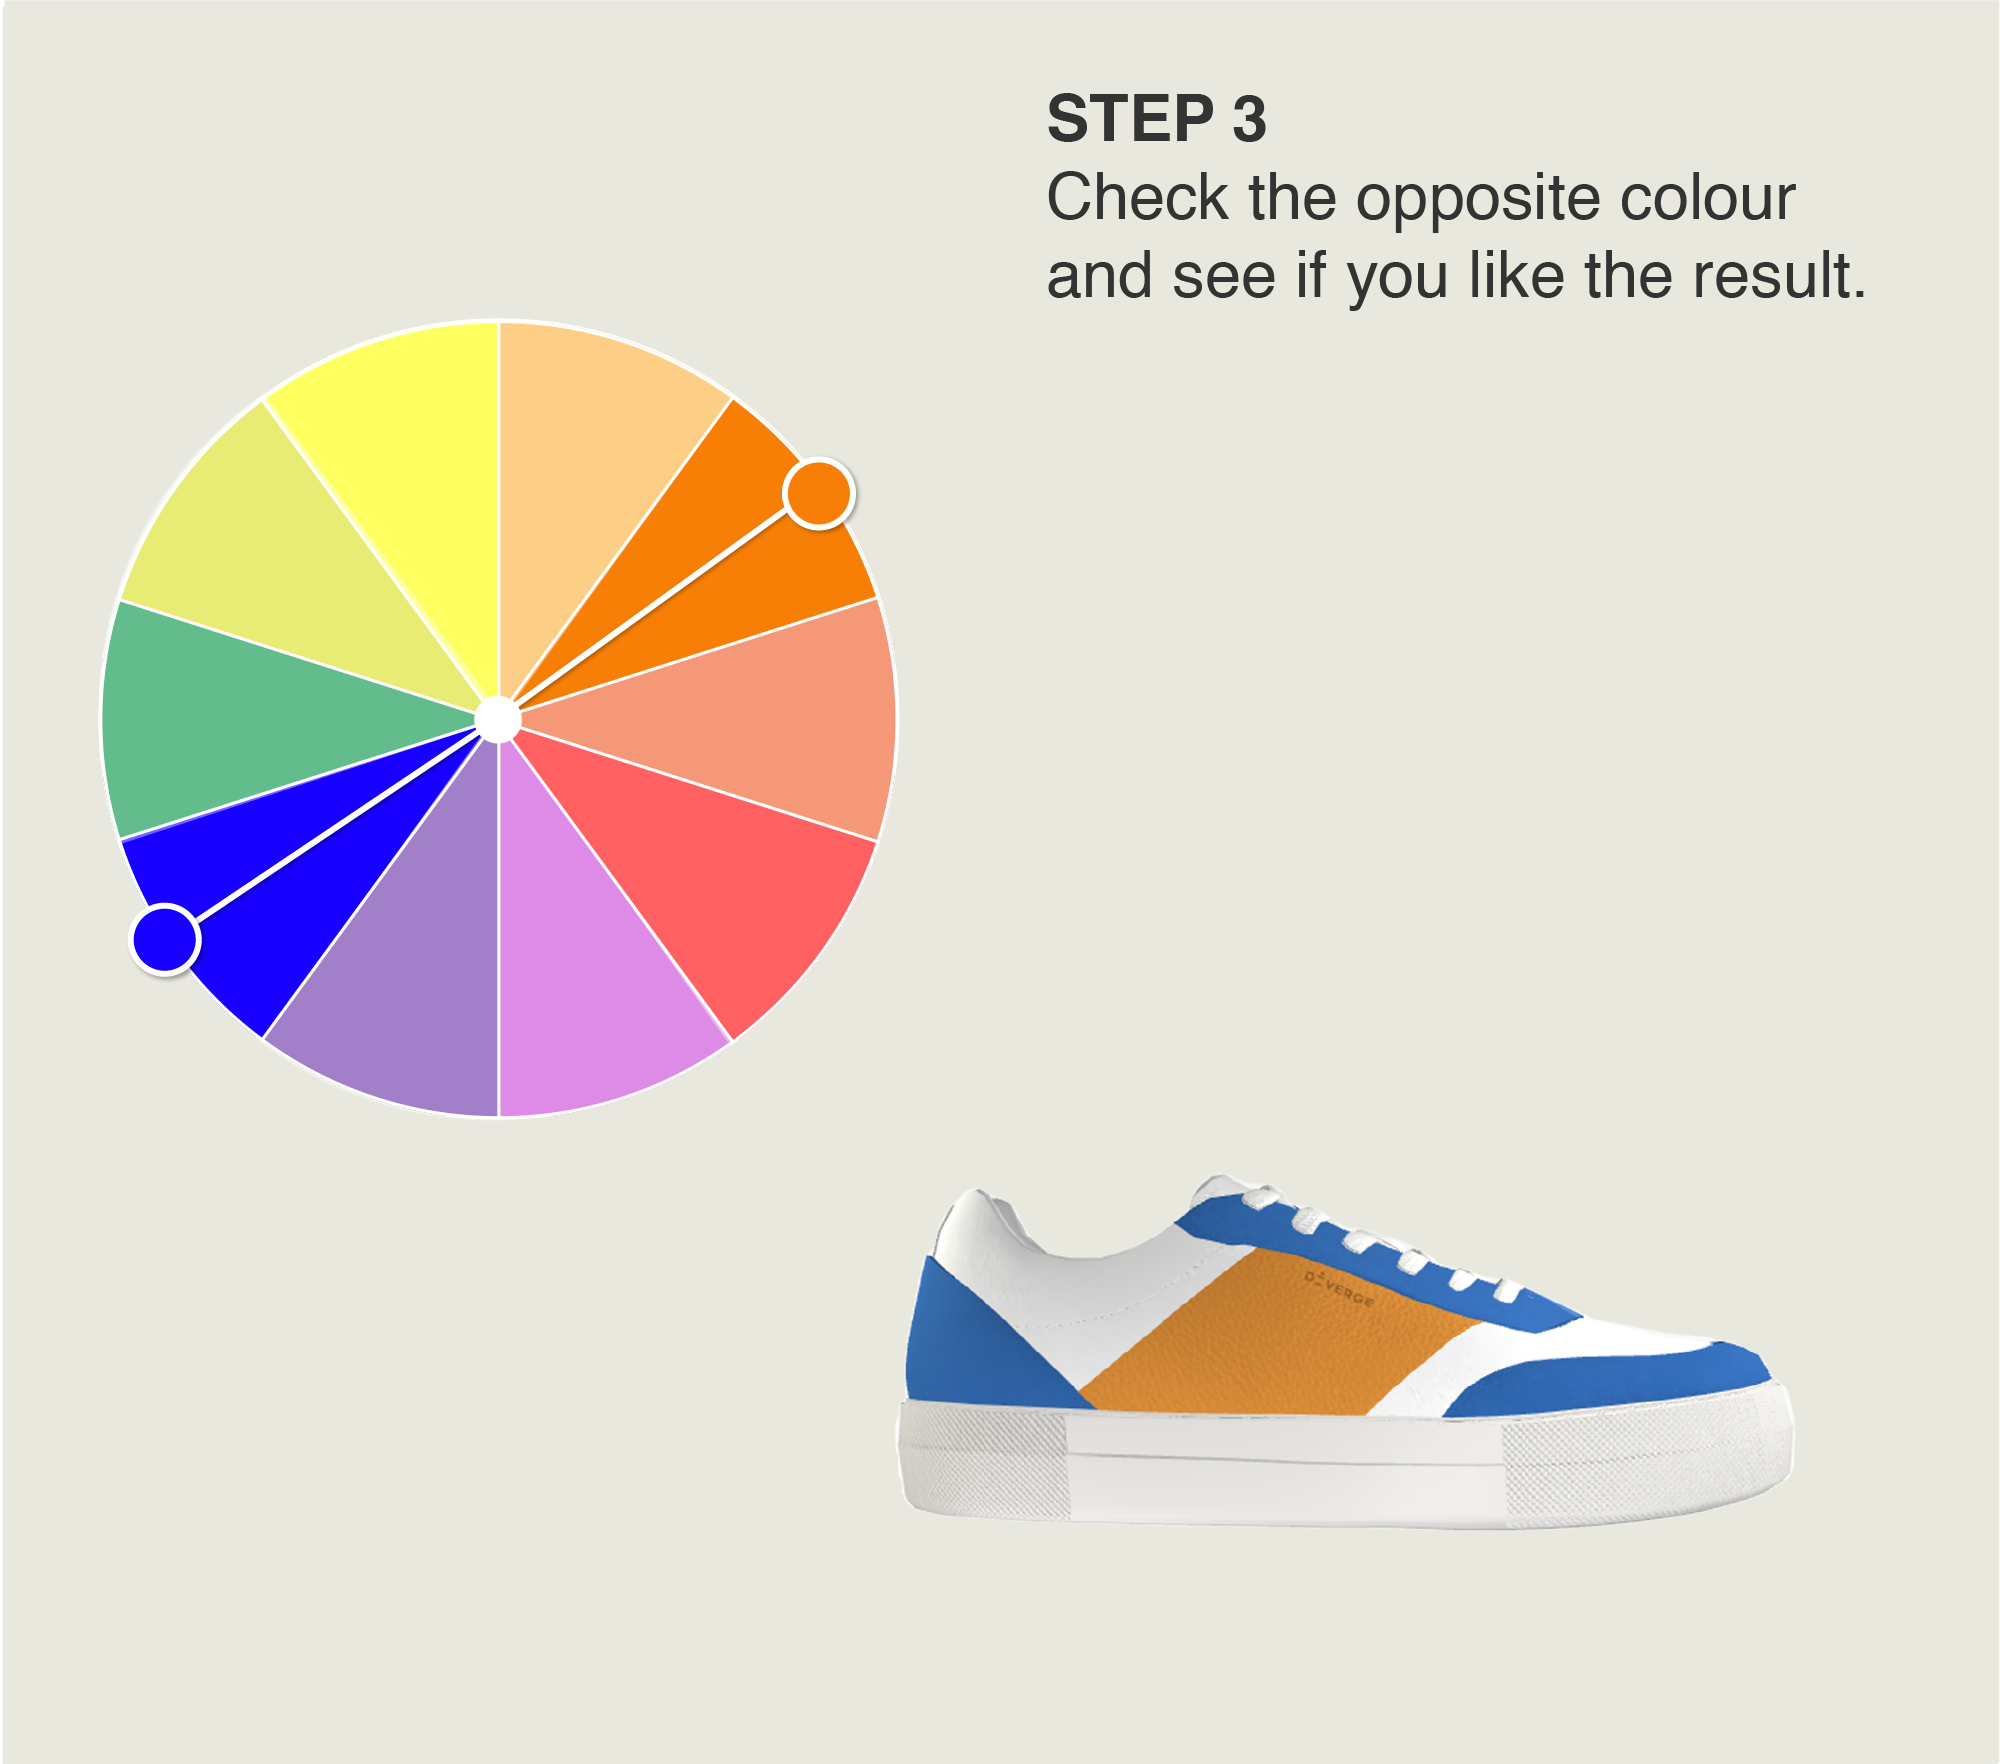 Chaussures personnalisées aux motifs uniques et aux couleurs éclatantes.